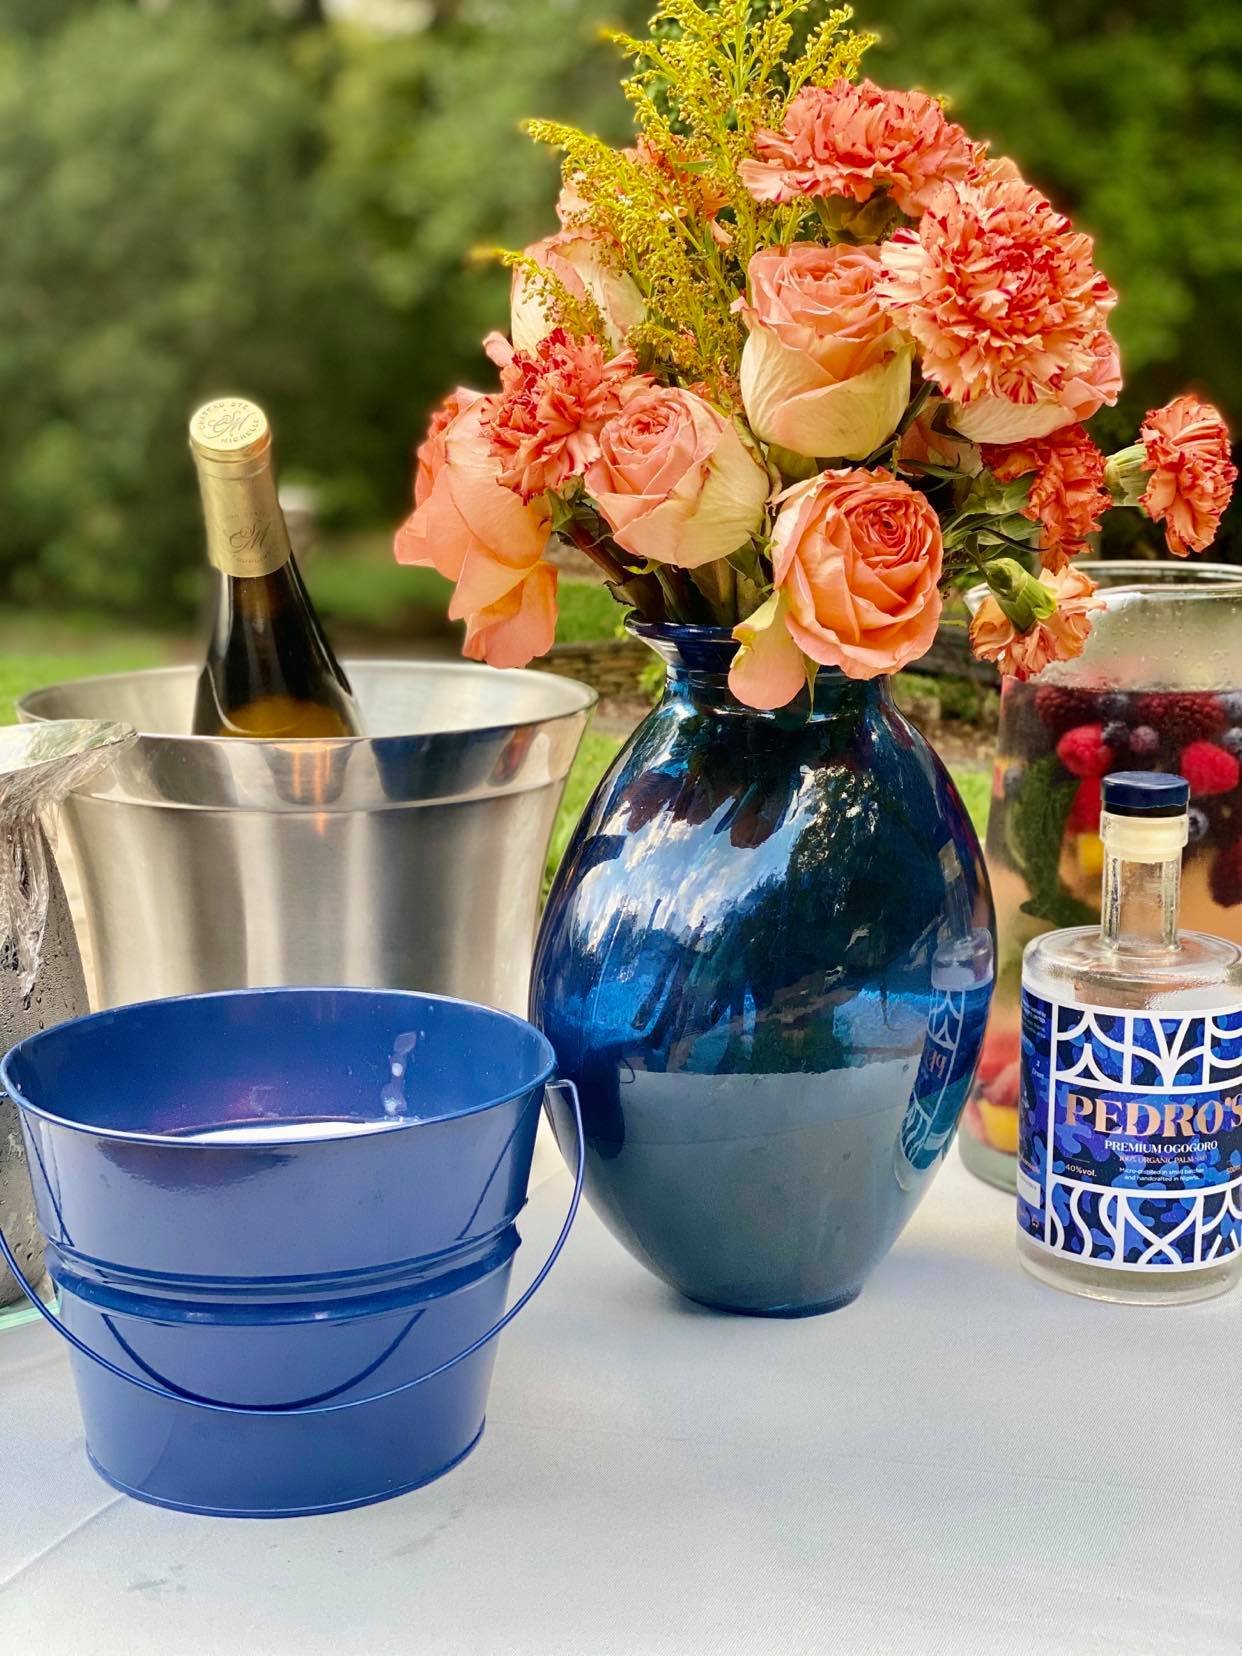 flowers in blue vase and wine.jpg